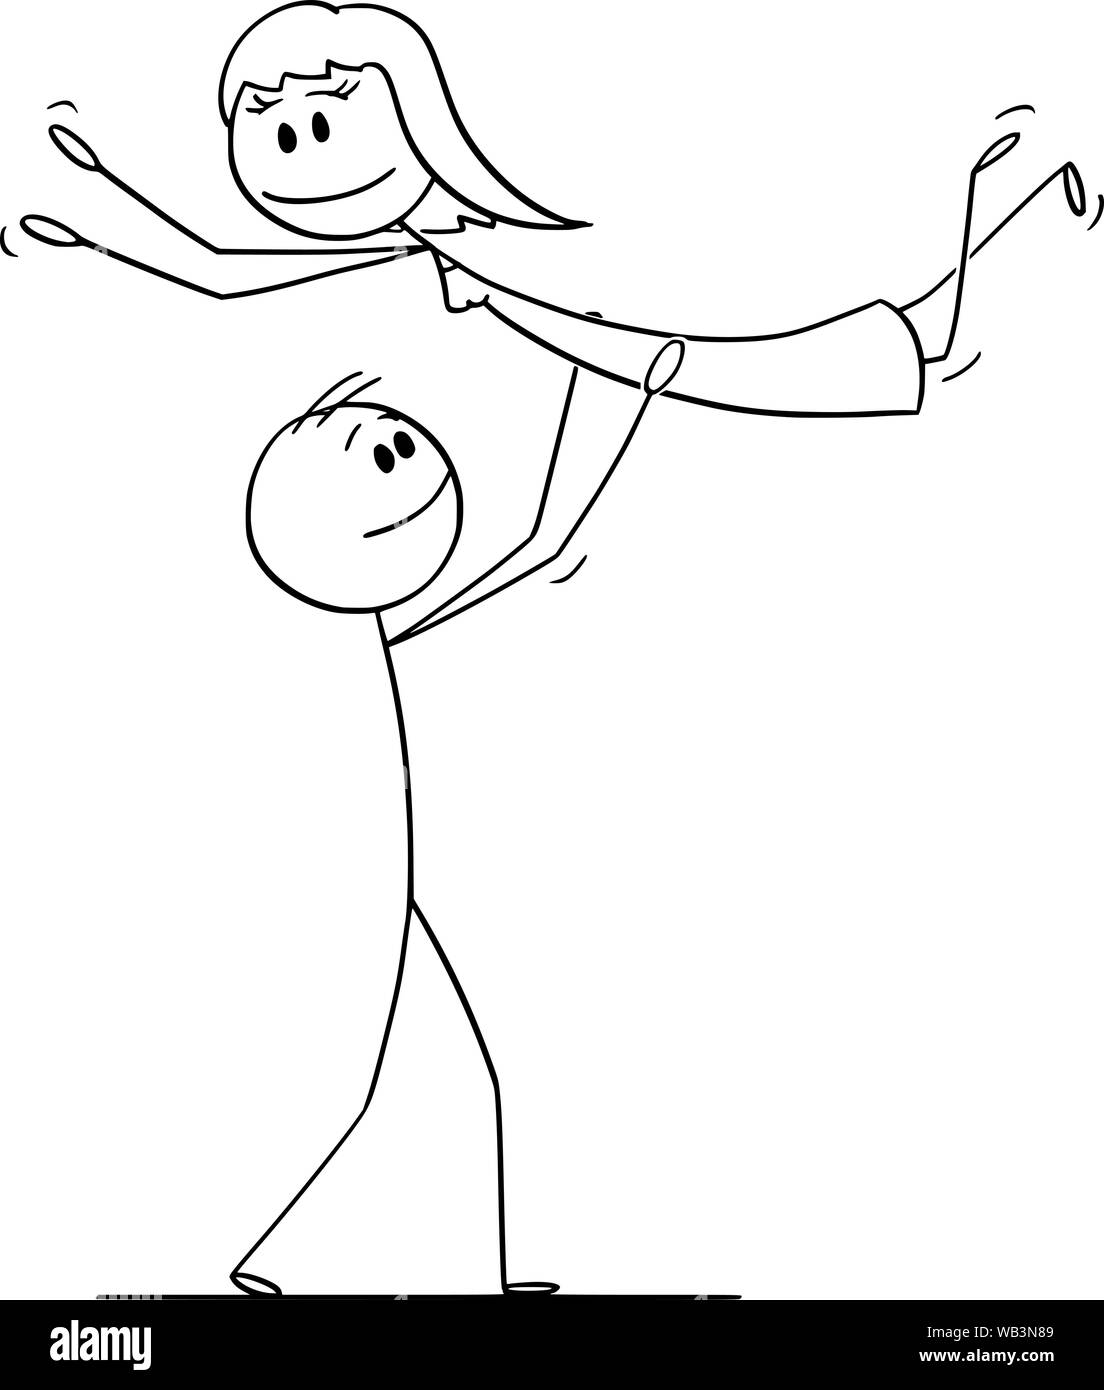 Vector cartoon stick figure dessin illustration conceptuelle du couple hétérosexuel de l'homme et de la femme d'effectuer la danse posent mécaniques pendant la danse. Illustration de Vecteur